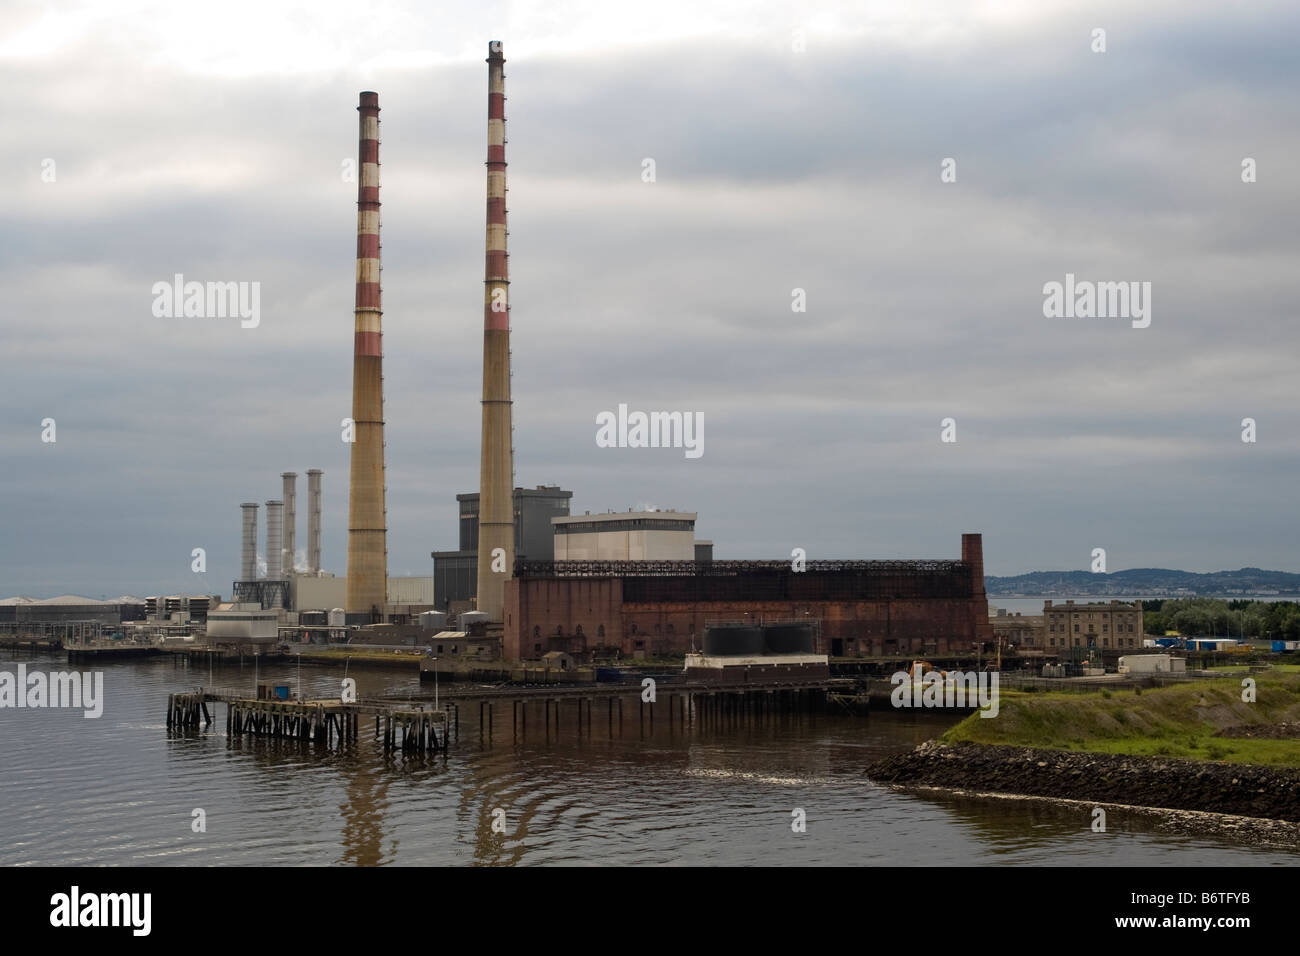 La centrale de Poolbeg, Ringsend, Dublin. Les cheminées sont 207 mètres de haut. Banque D'Images